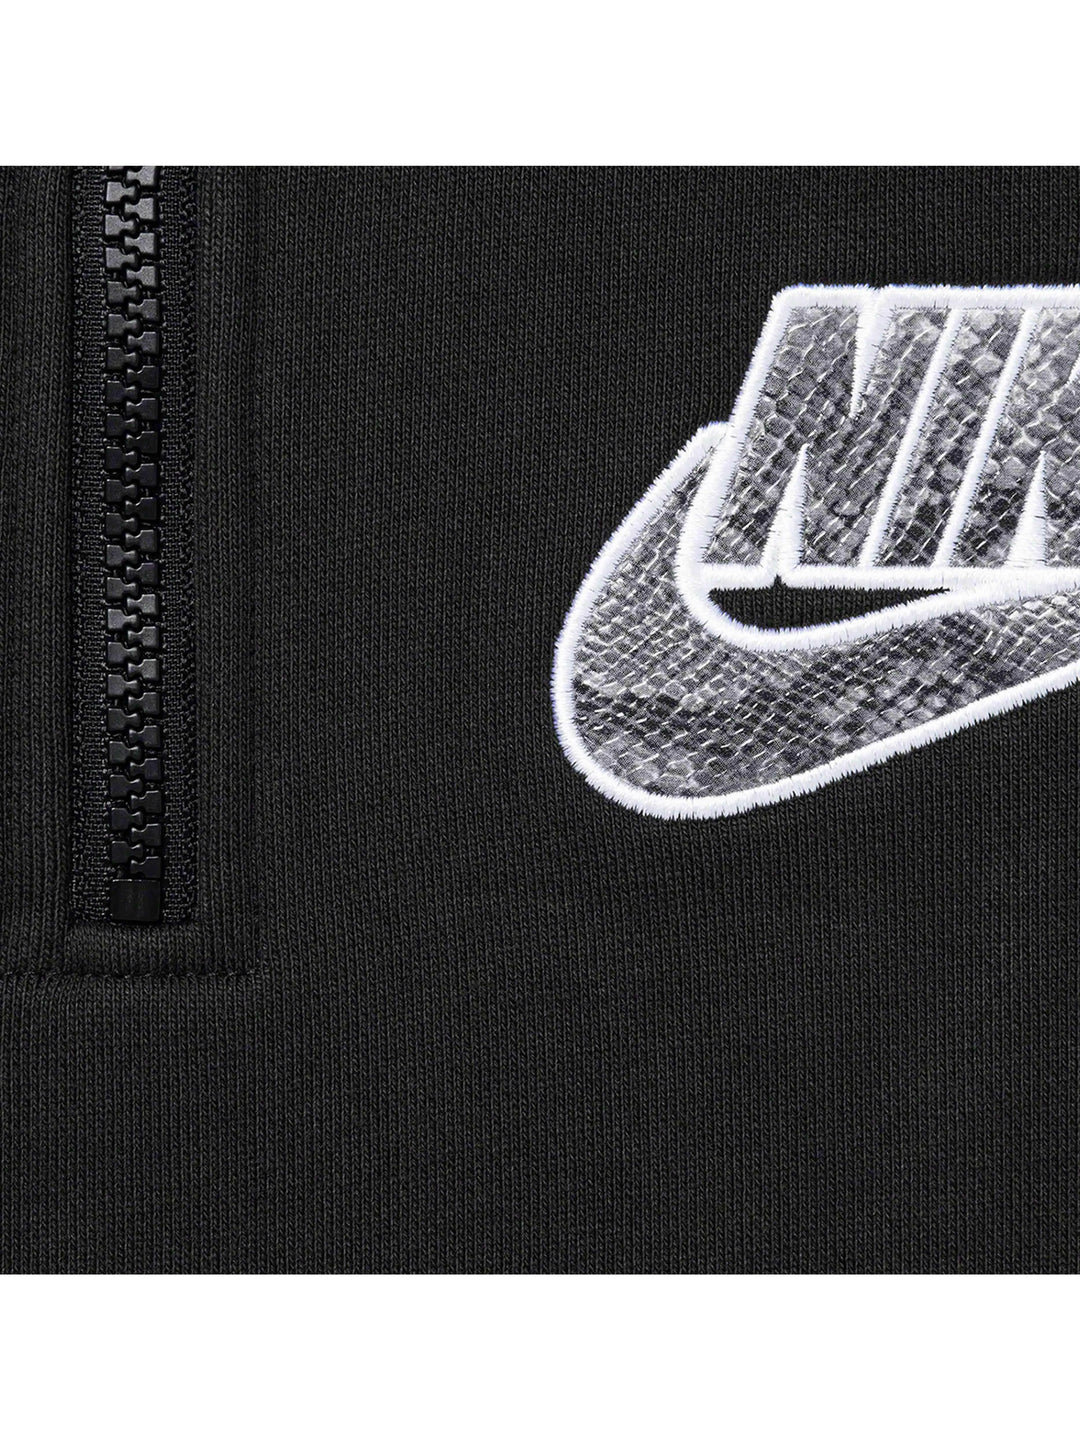 Supreme X Nike Half Zip Hoodie BLACK [SS21] Prior